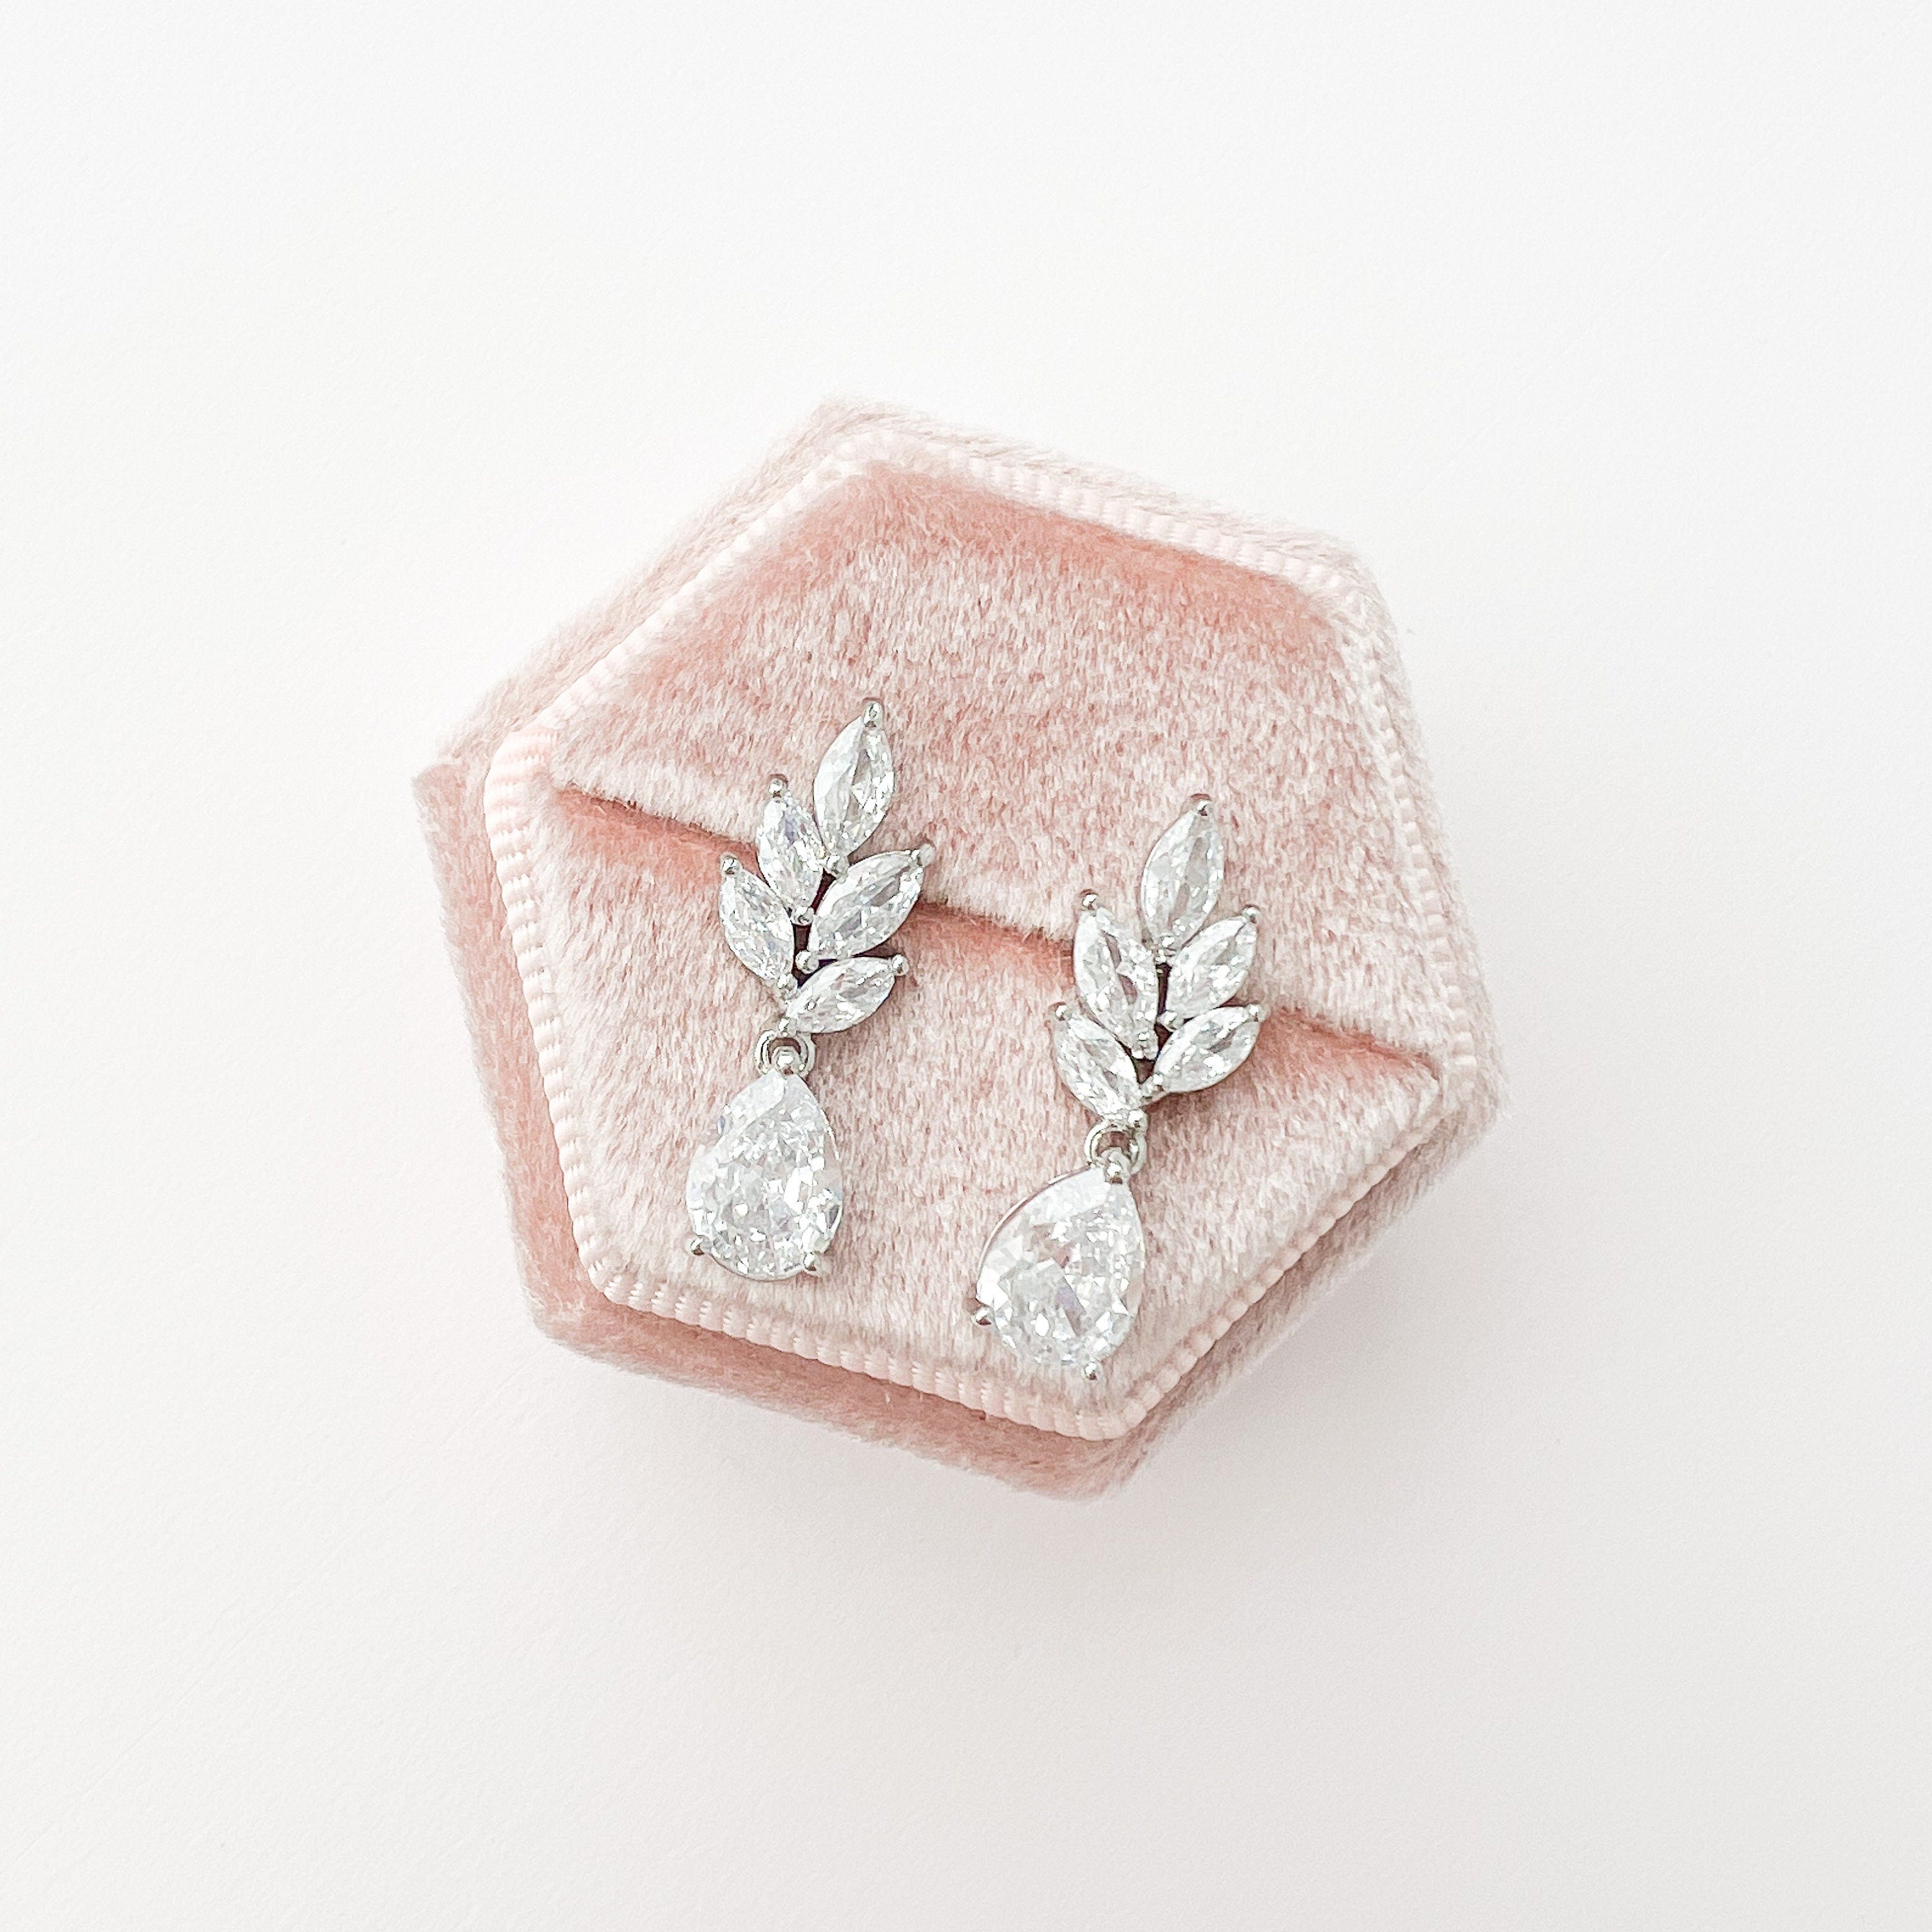 TAYLOR // Bridal drop earrings